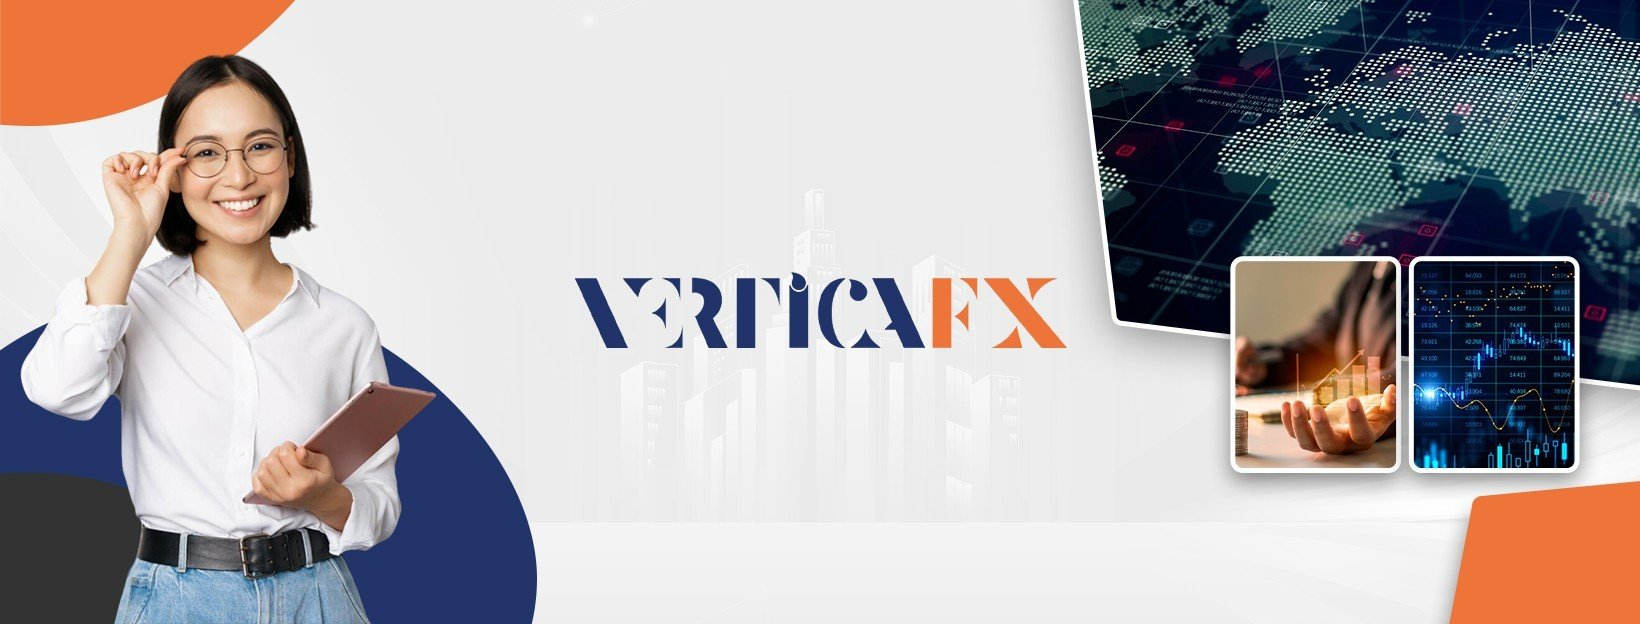 Nhà đầu tư có thể giao dịch gì tại sàn môi giới VerticaFX?